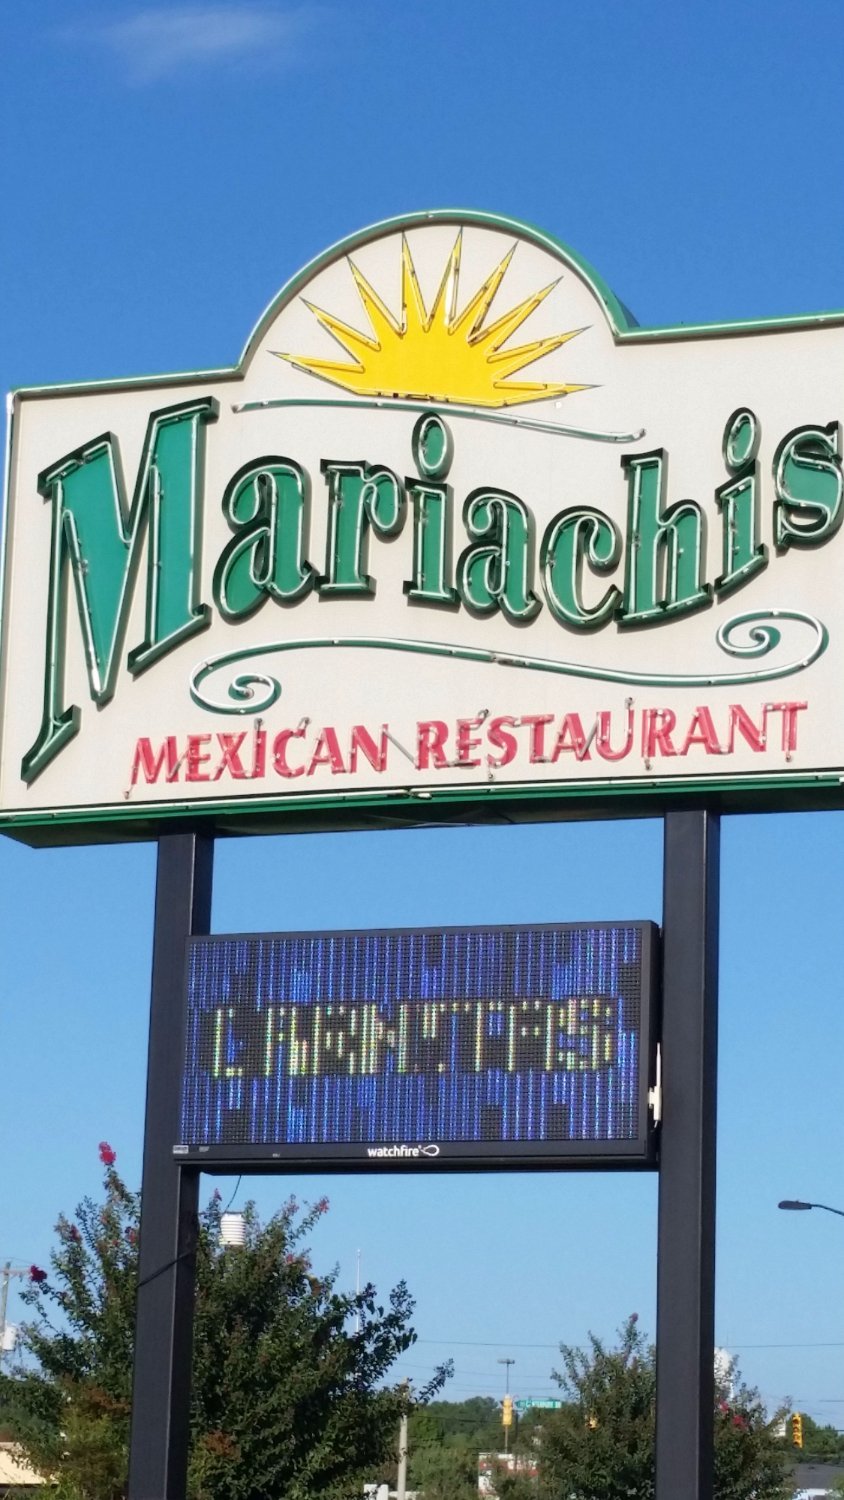 Mariachis Mexican Restaurant